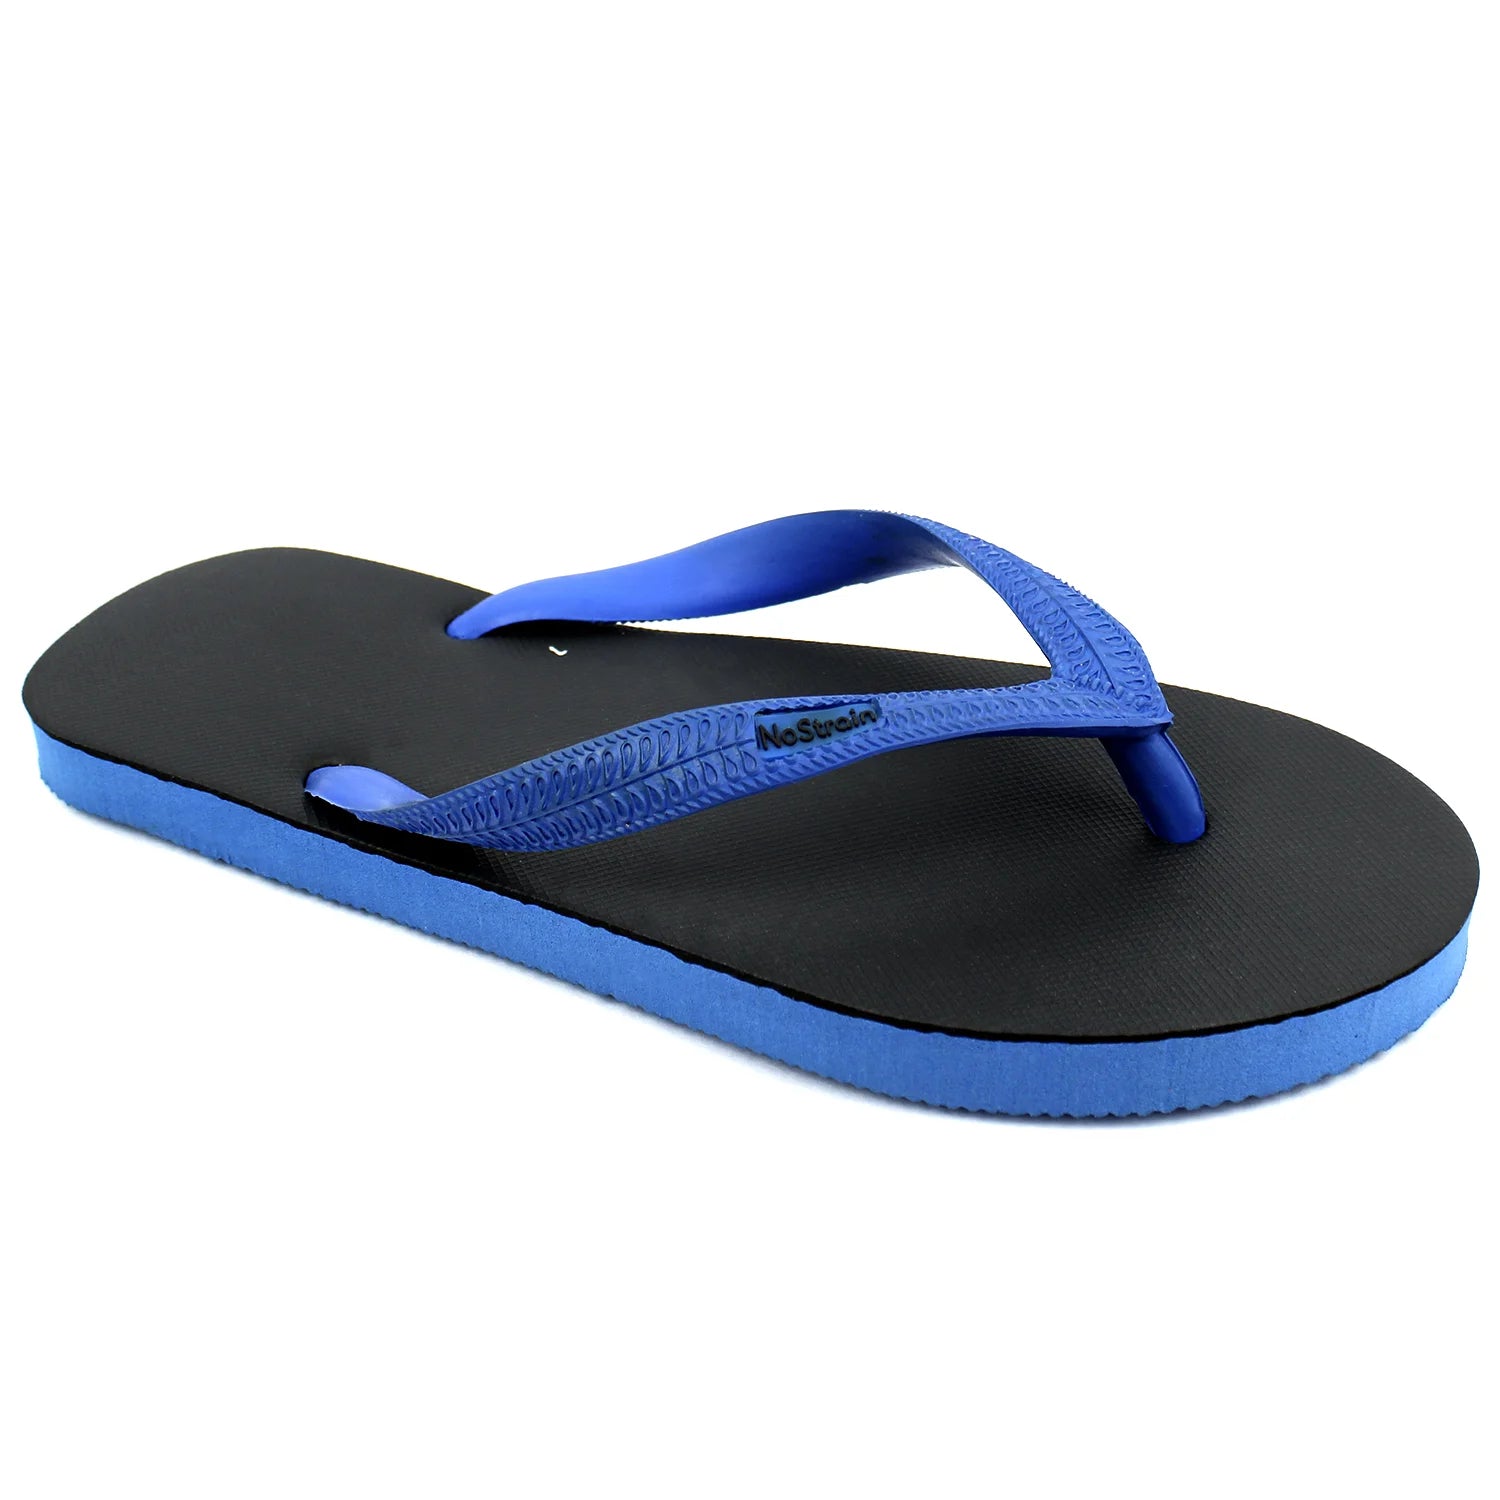 Black & Royal Blue Natural Rubber Flip-Flops Slippers (Men)